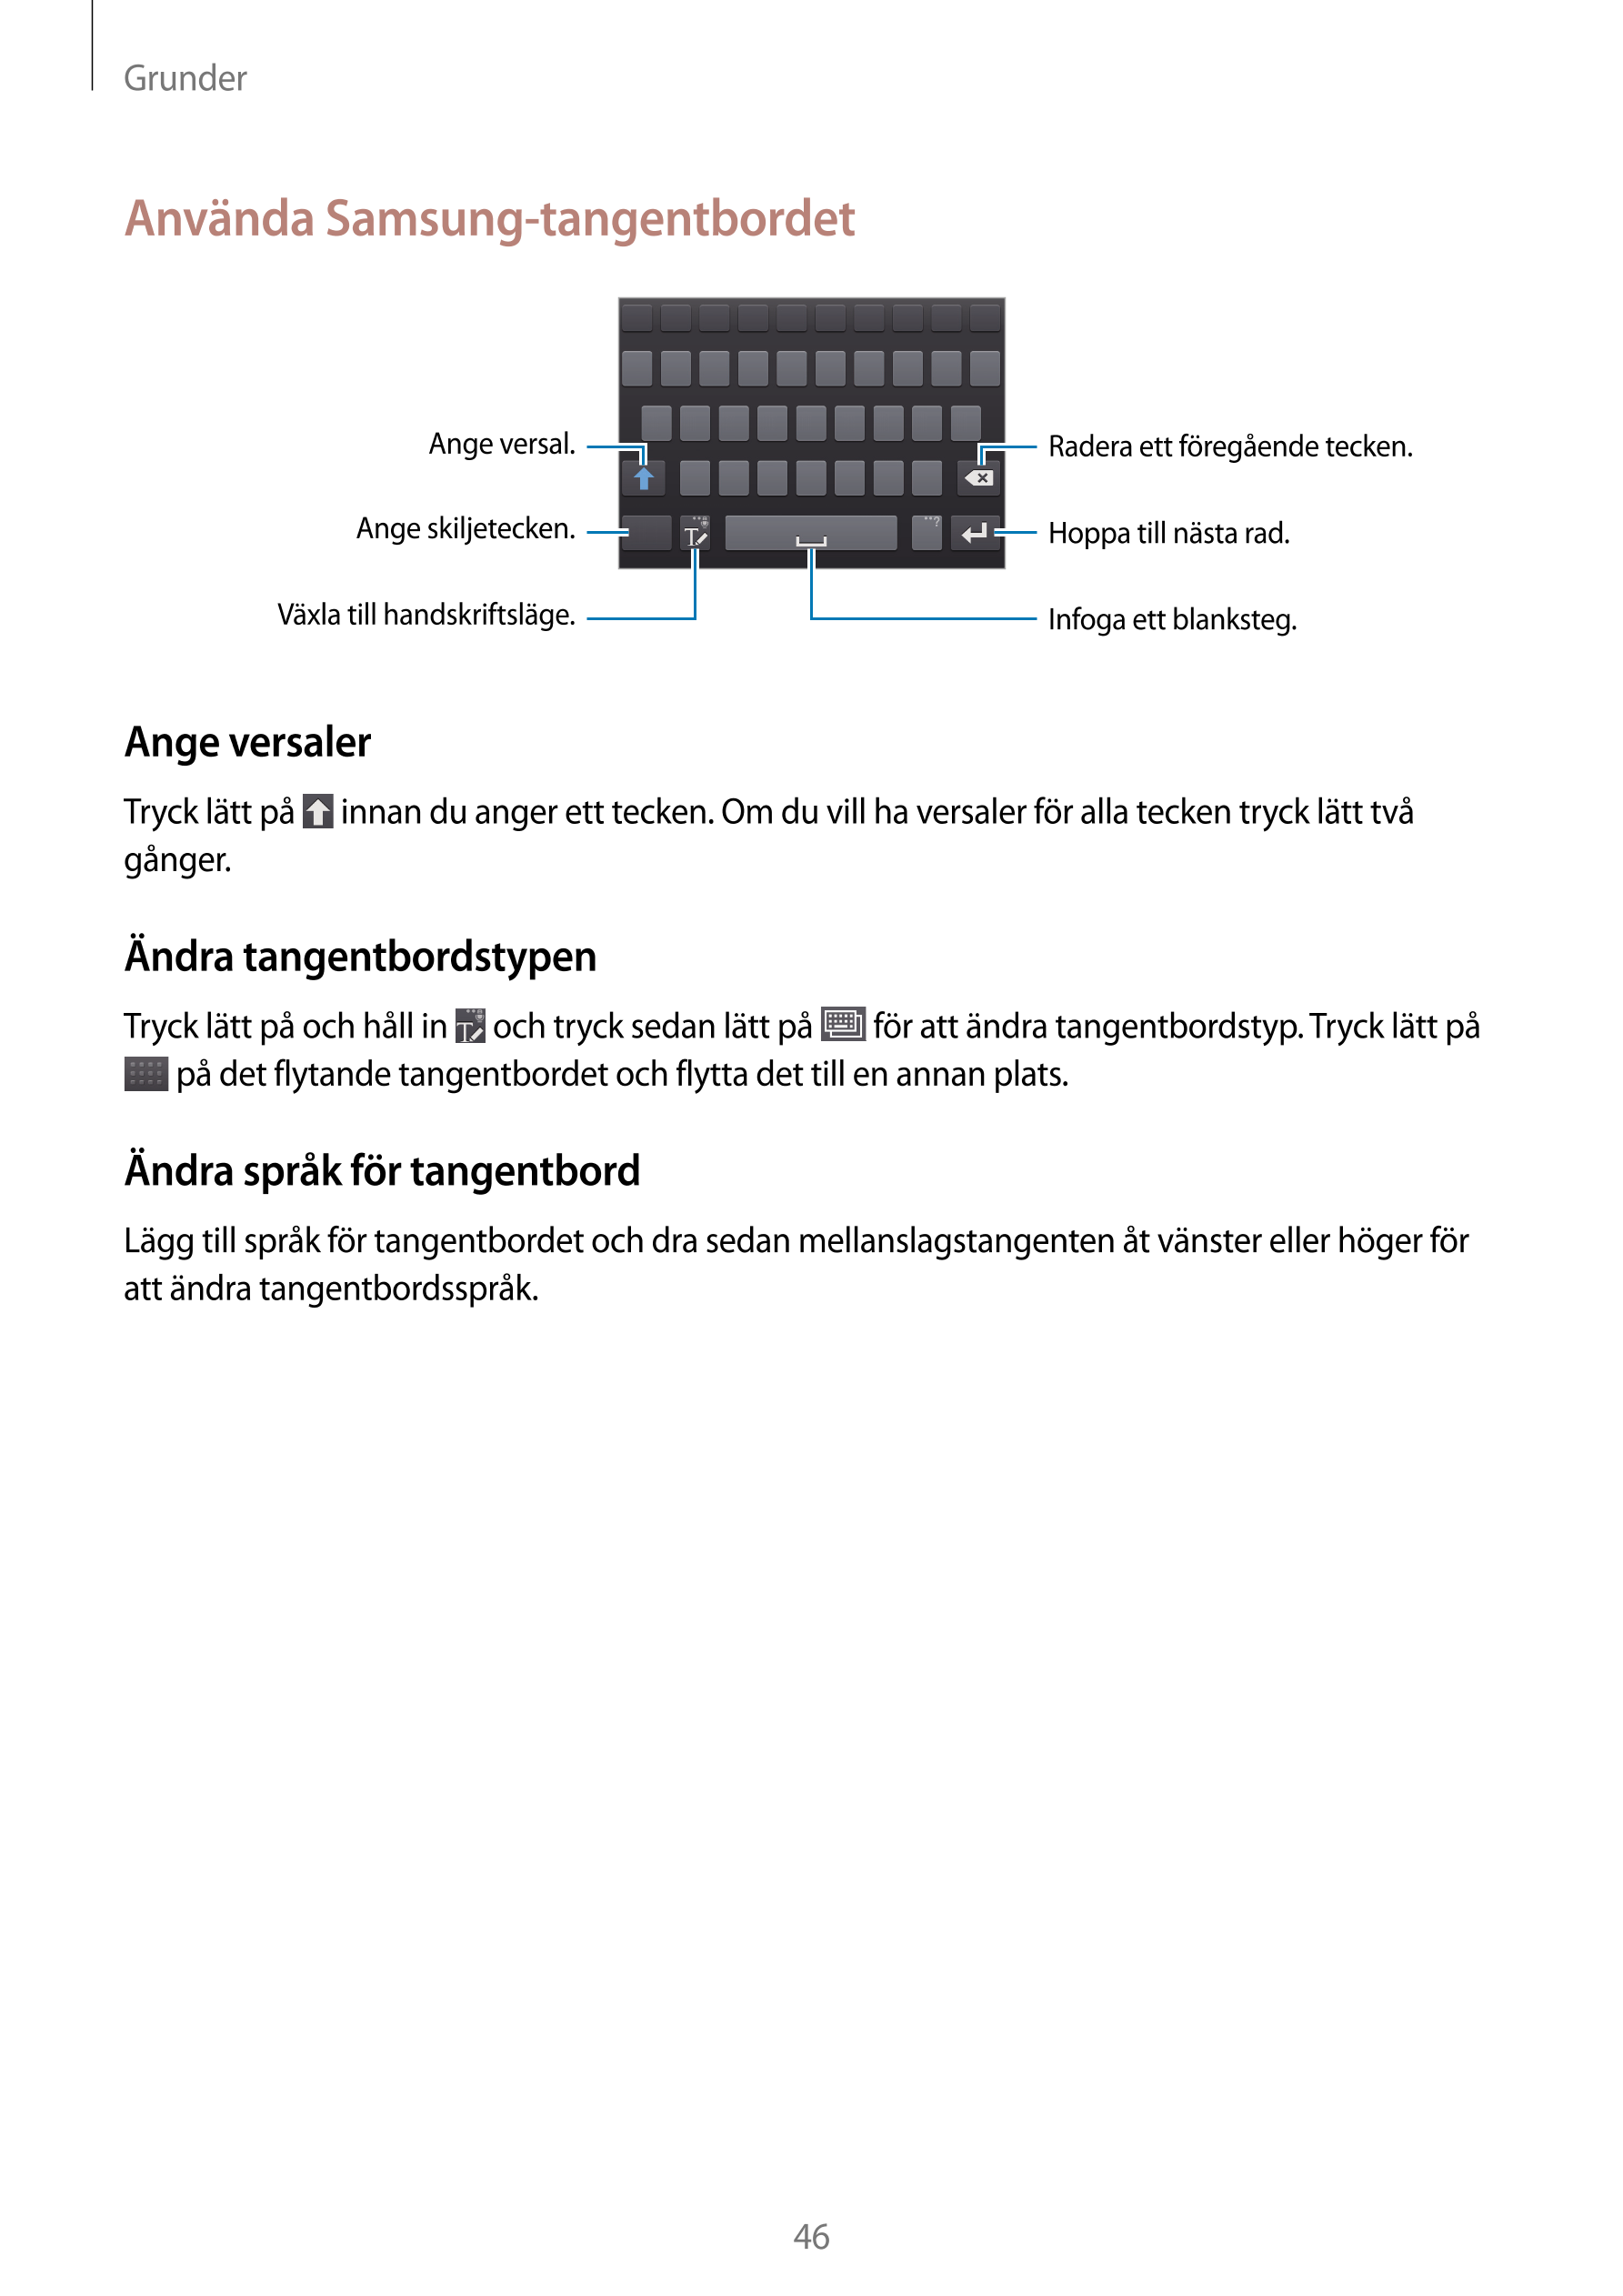 Grunder
Använda Samsung-tangentbordet
Ange versal. Radera ett föregående tecken.
Ange skiljetecken. Hoppa till nästa rad.
Växla 